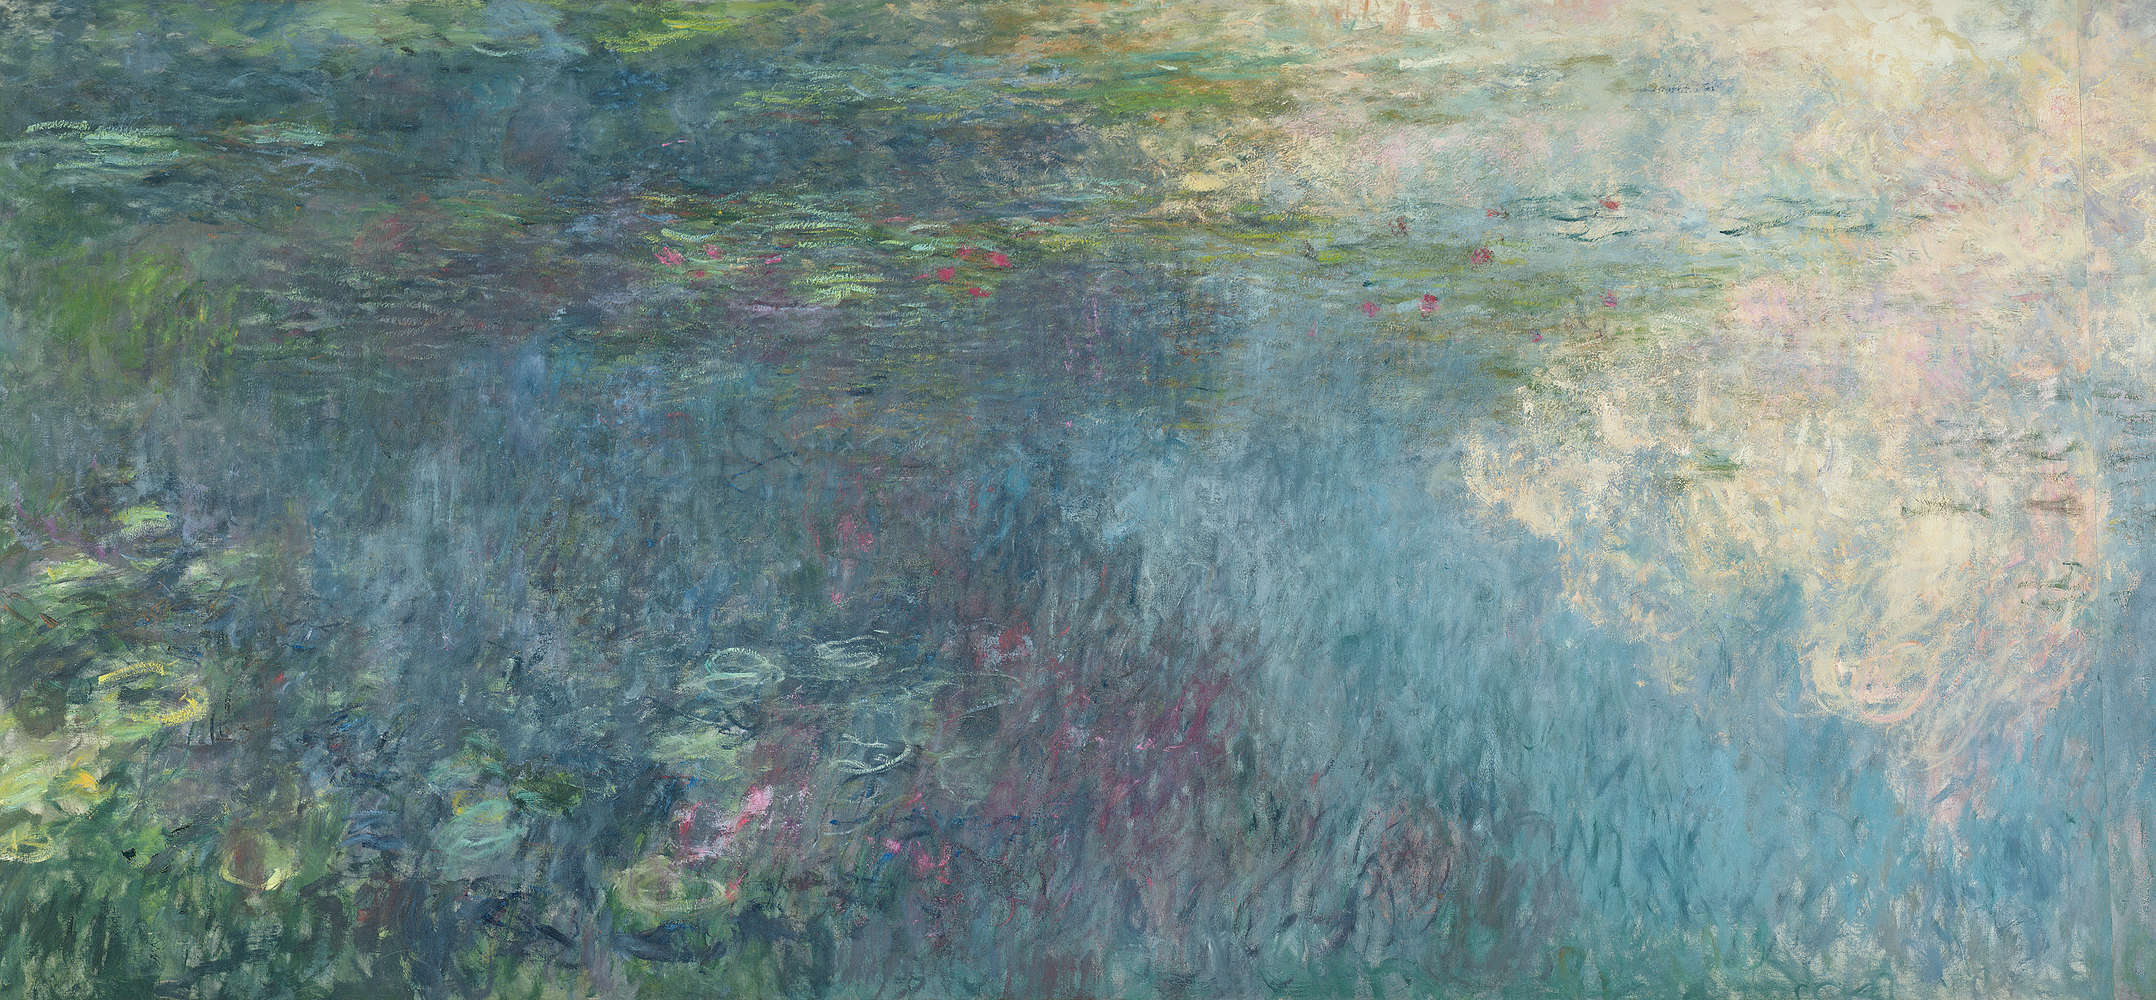             Mural "Nenúfares Las nubes" de Claude Monet
        